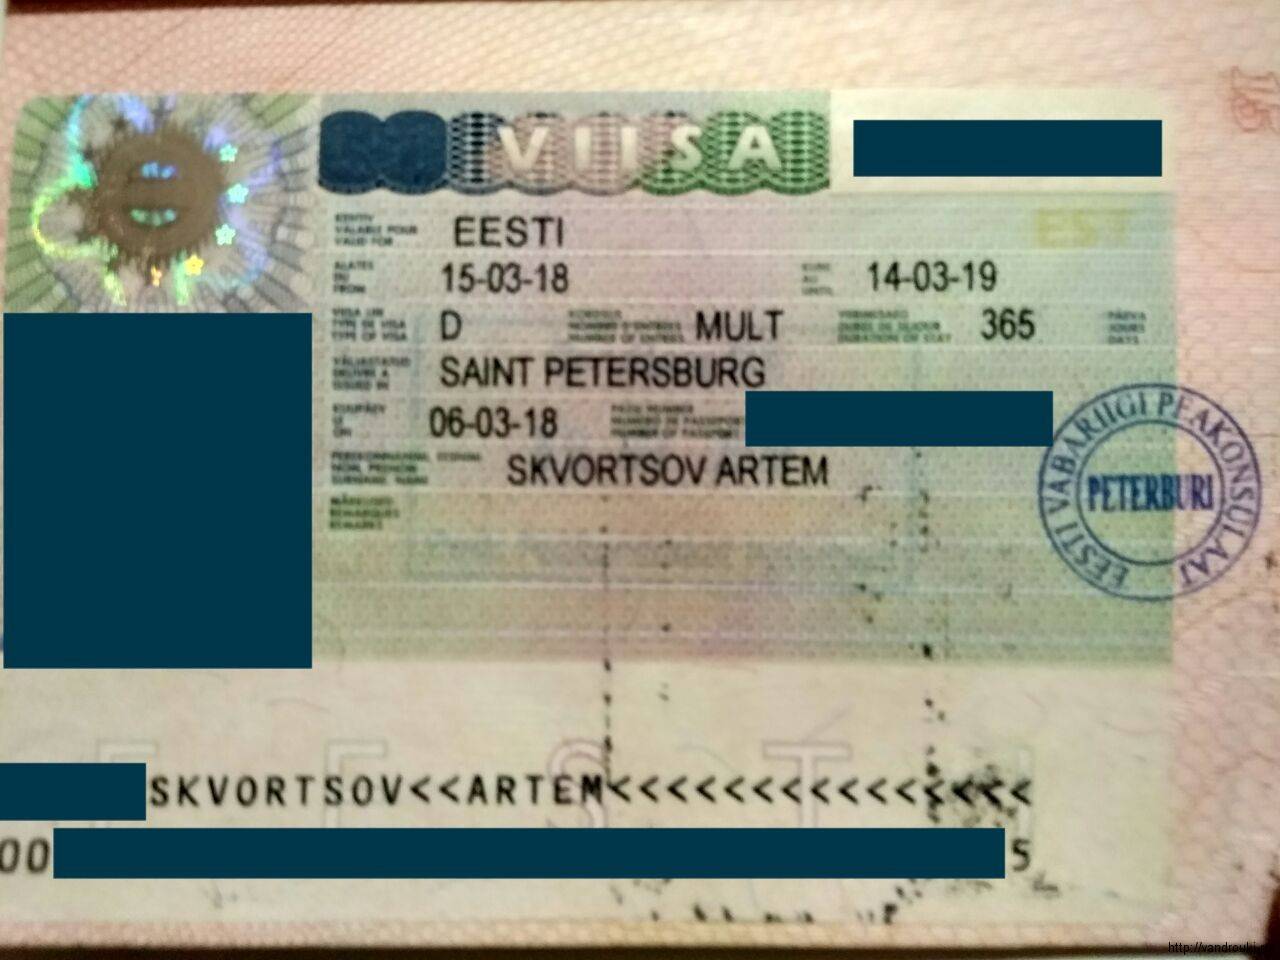 Виза в эстонию для россиян: подробная инструкция по оформлению шенгенской визы в 2021 году